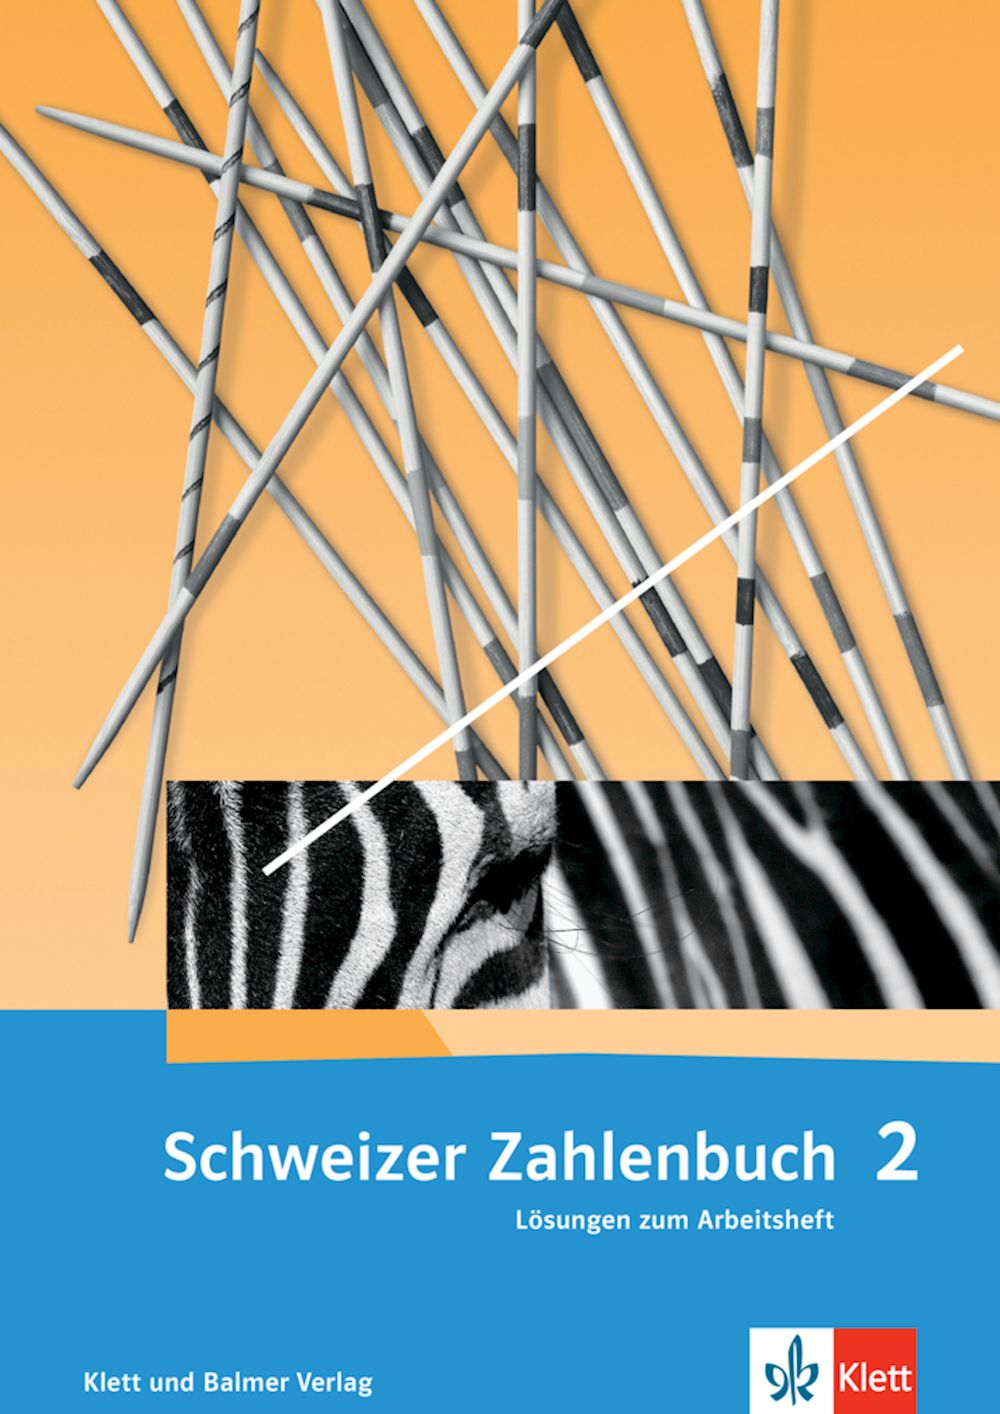 Schweizer Zahlenbuch 2, Lösungen zum Arbeitsheft